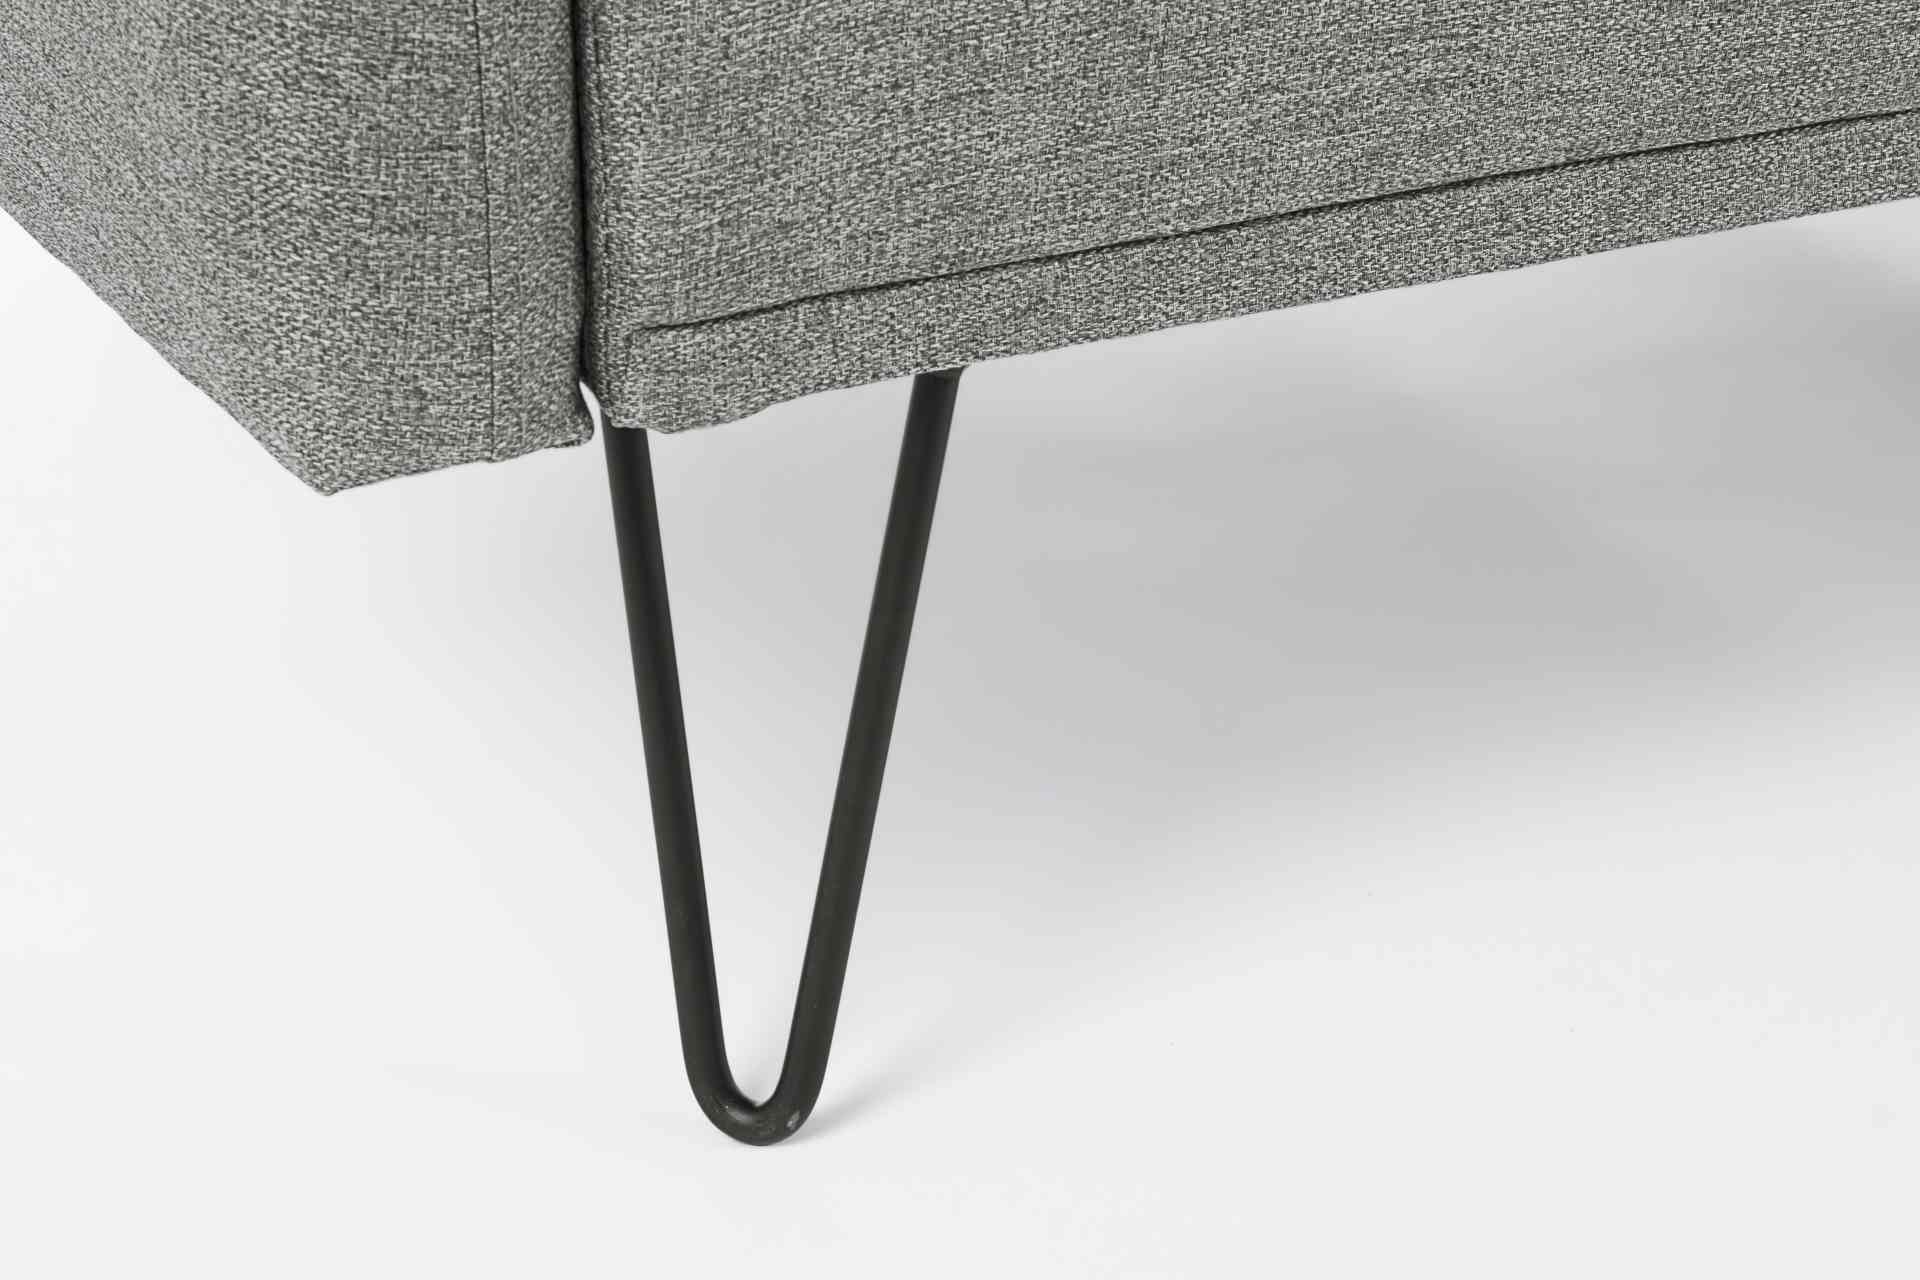 Das Schlafsofa Bridjet überzeugt mit seinem klassischen Design. Gefertigt wurde es aus Stoff, welcher einen grauen Farbton besitzt. Das Gestell ist aus Metall und hat eine schwarzen Farbe. Die Schlaffunktion hat ein Maß von 180x105 cm. Das Sofa ist in der